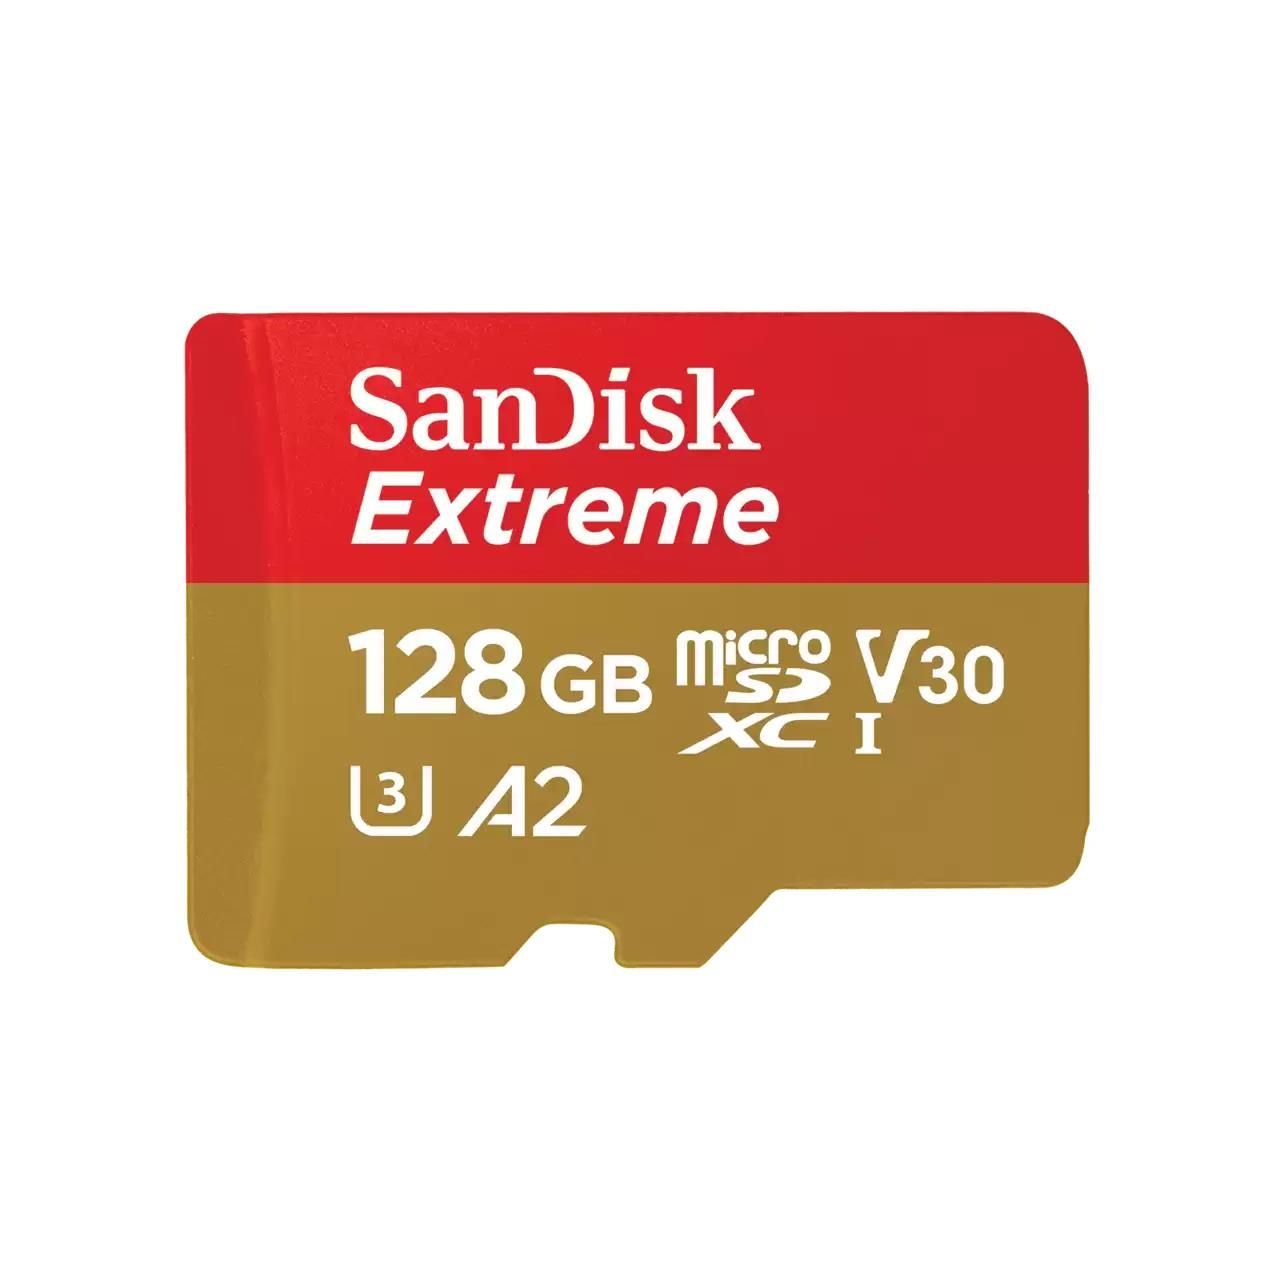 SanDisk Extreme 128Gb MicroSDXC